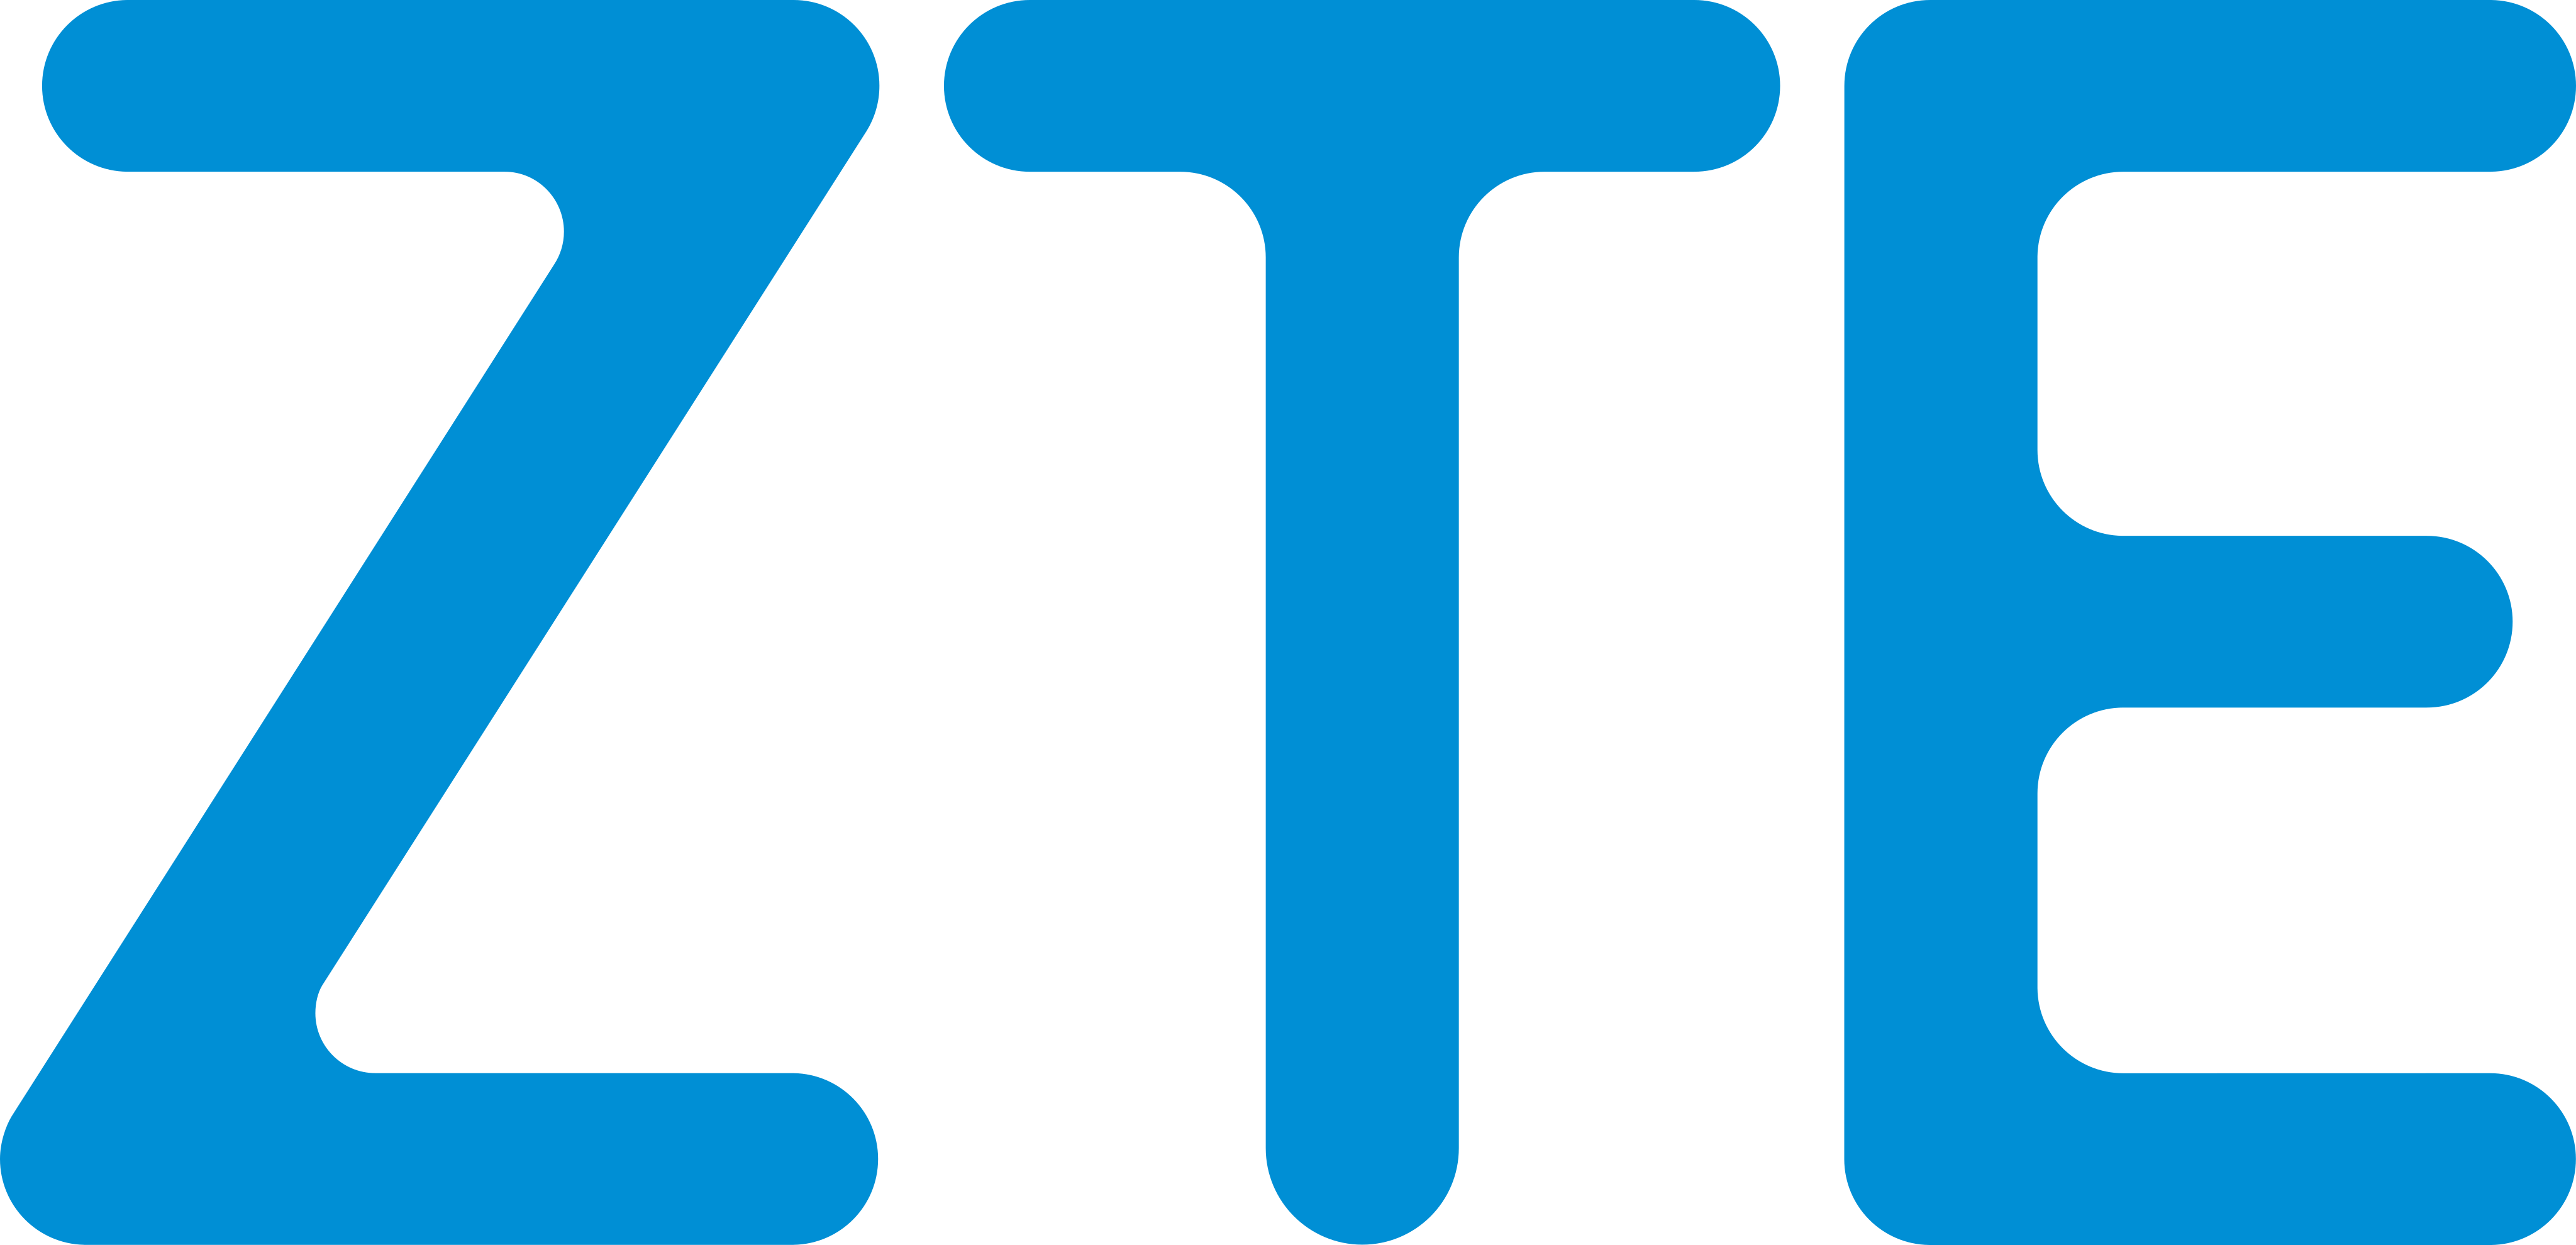 zte-firma-parceria-com-a-multilaser-e-entra-no-mercado-varejista-do-brasil